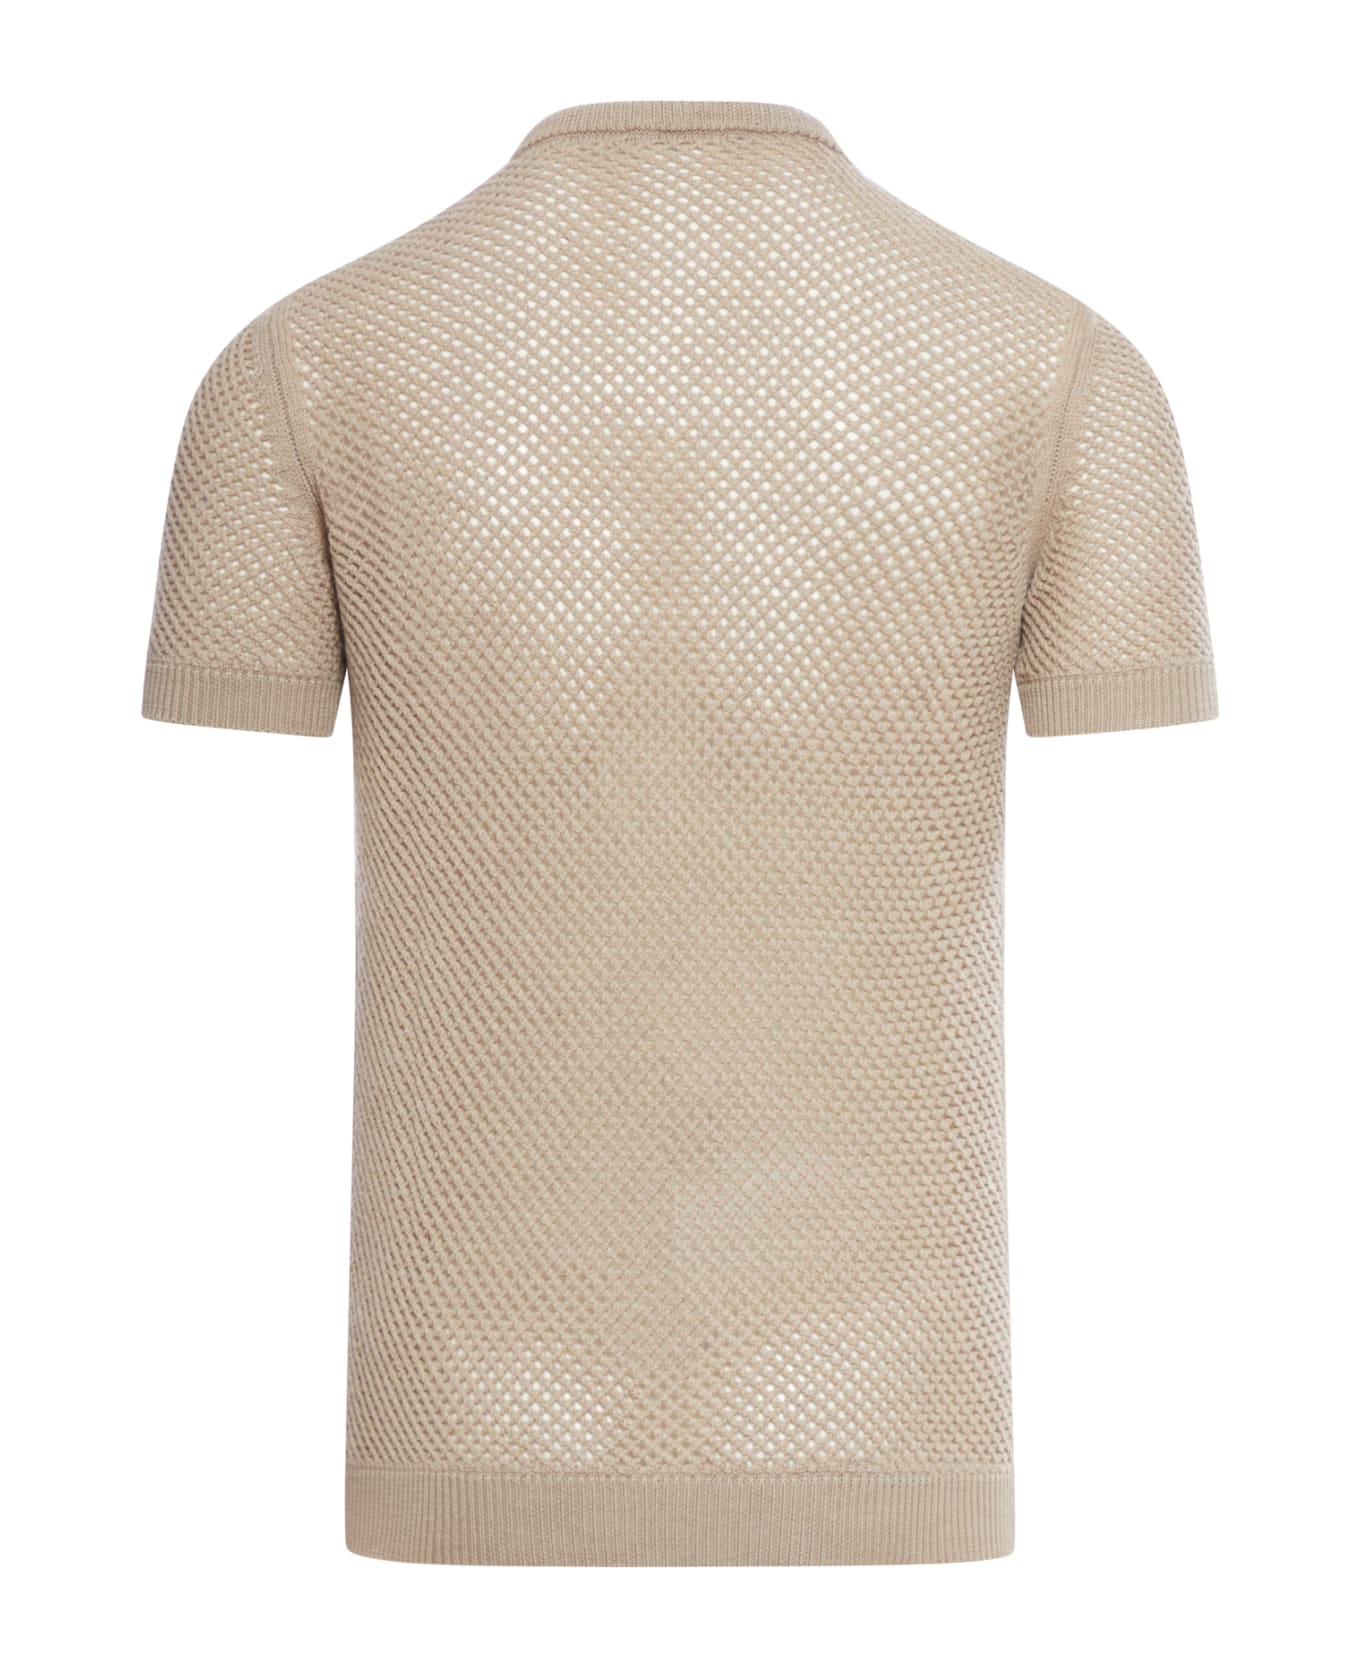 Fendi Pullover Knit T-shirt Wv Herb Dyed S - Mtt Karite